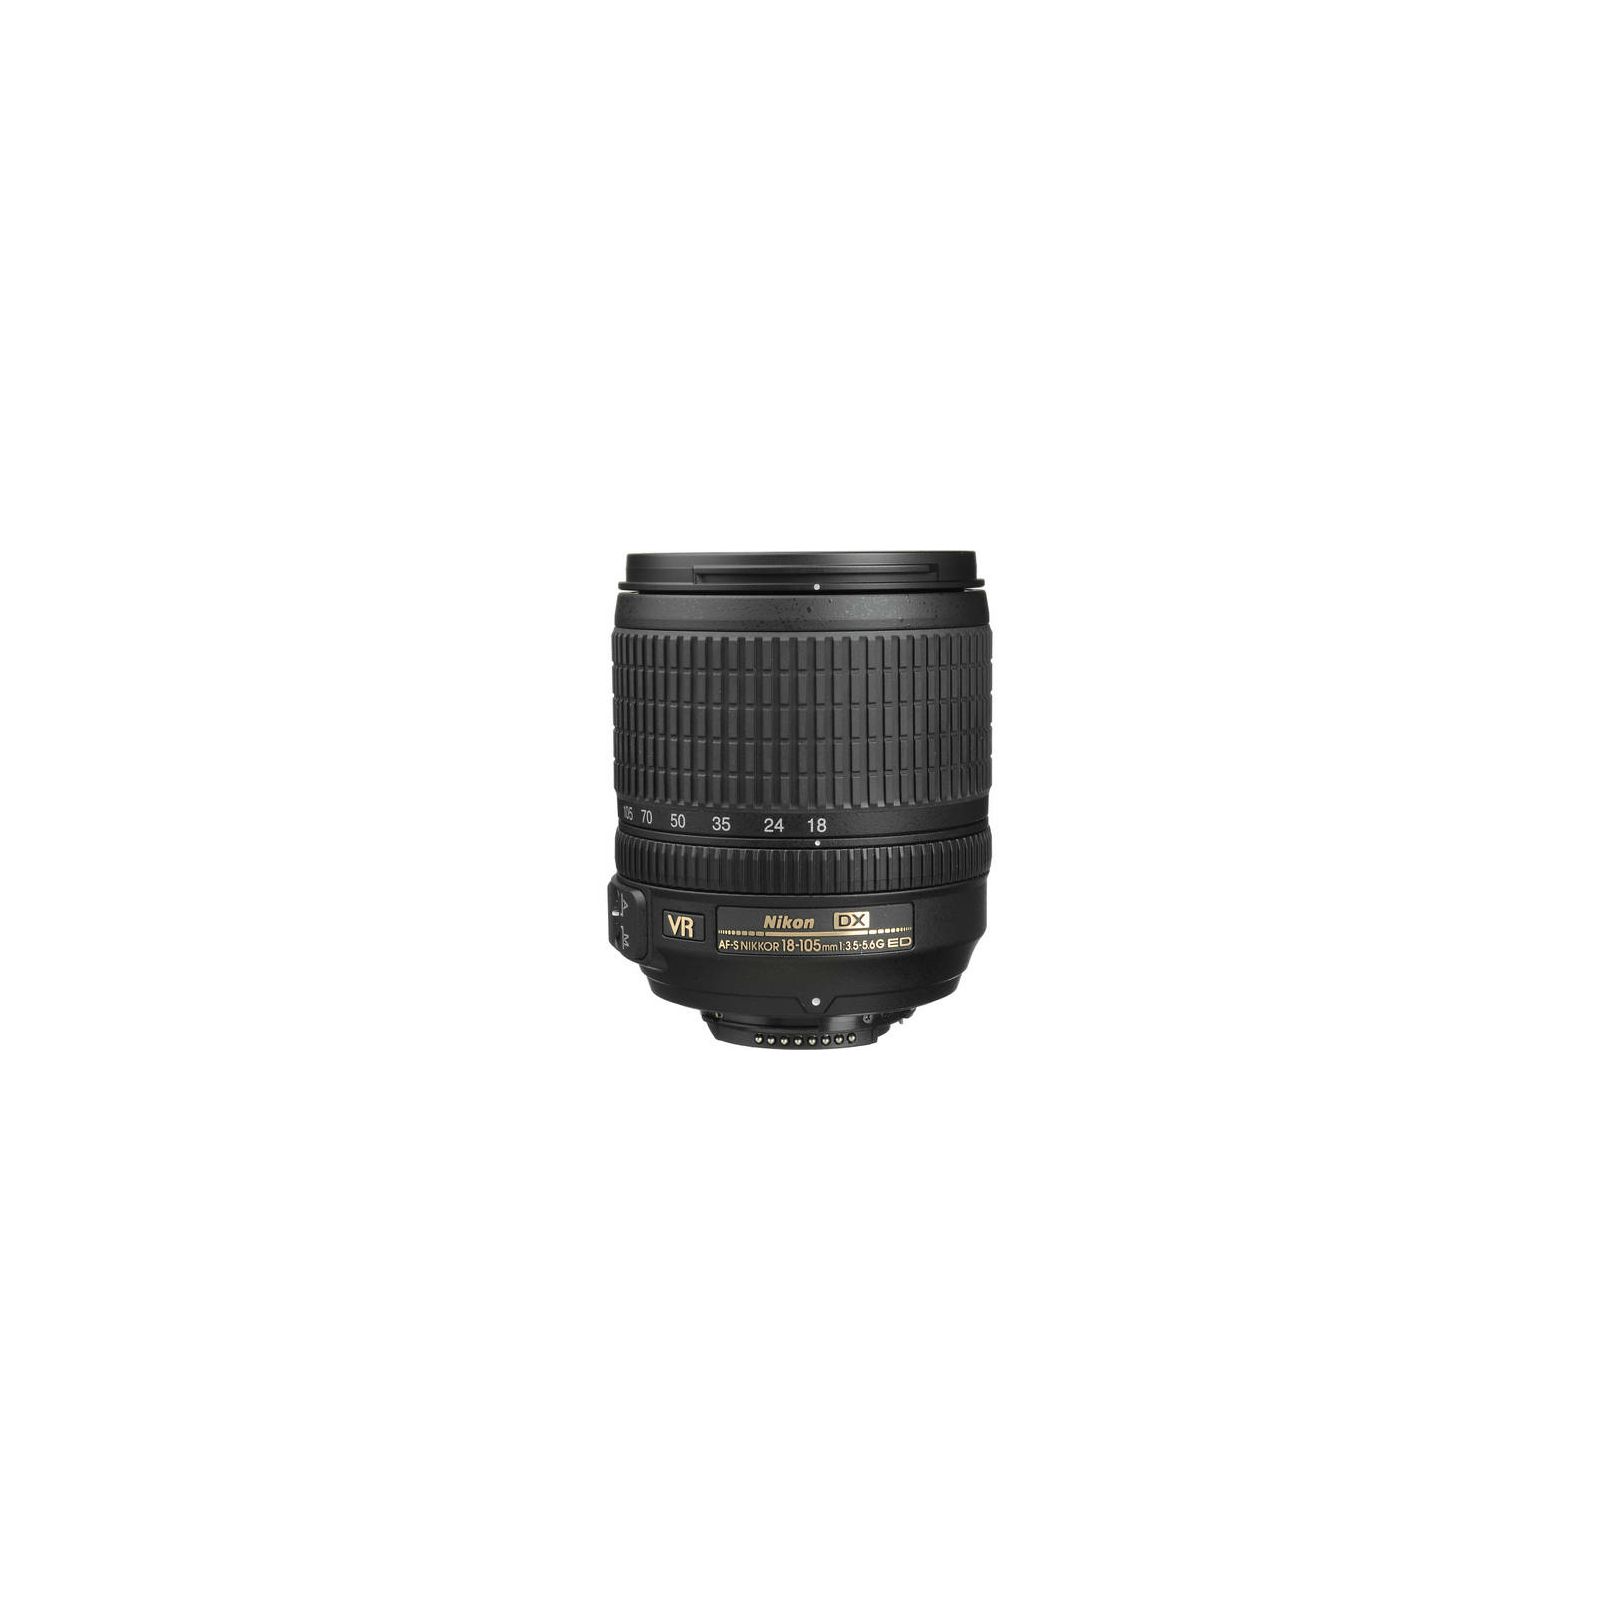 Nikon AF-S 18-105mm f/3.5-5.6G VR DX standardni objektiv Nikkor 18-105 f/3.5-5.6 F3.5-5.6 3.5-5.6 auto focus zoom lens (JAA805DA)